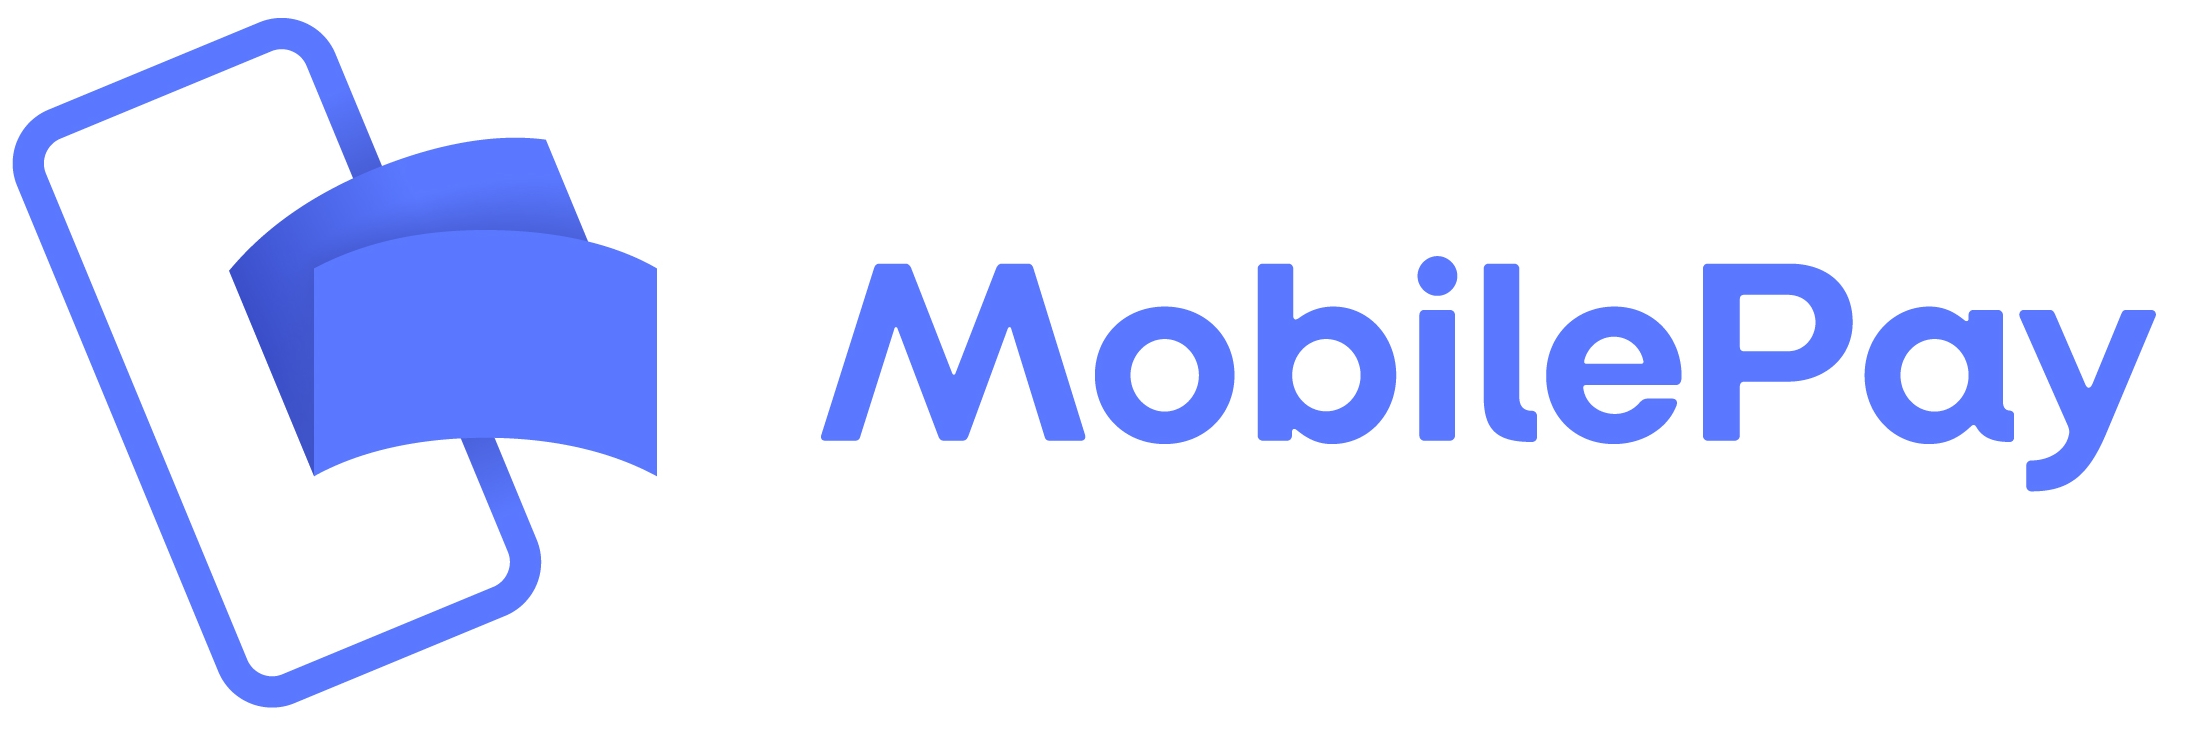 mobilepay logo